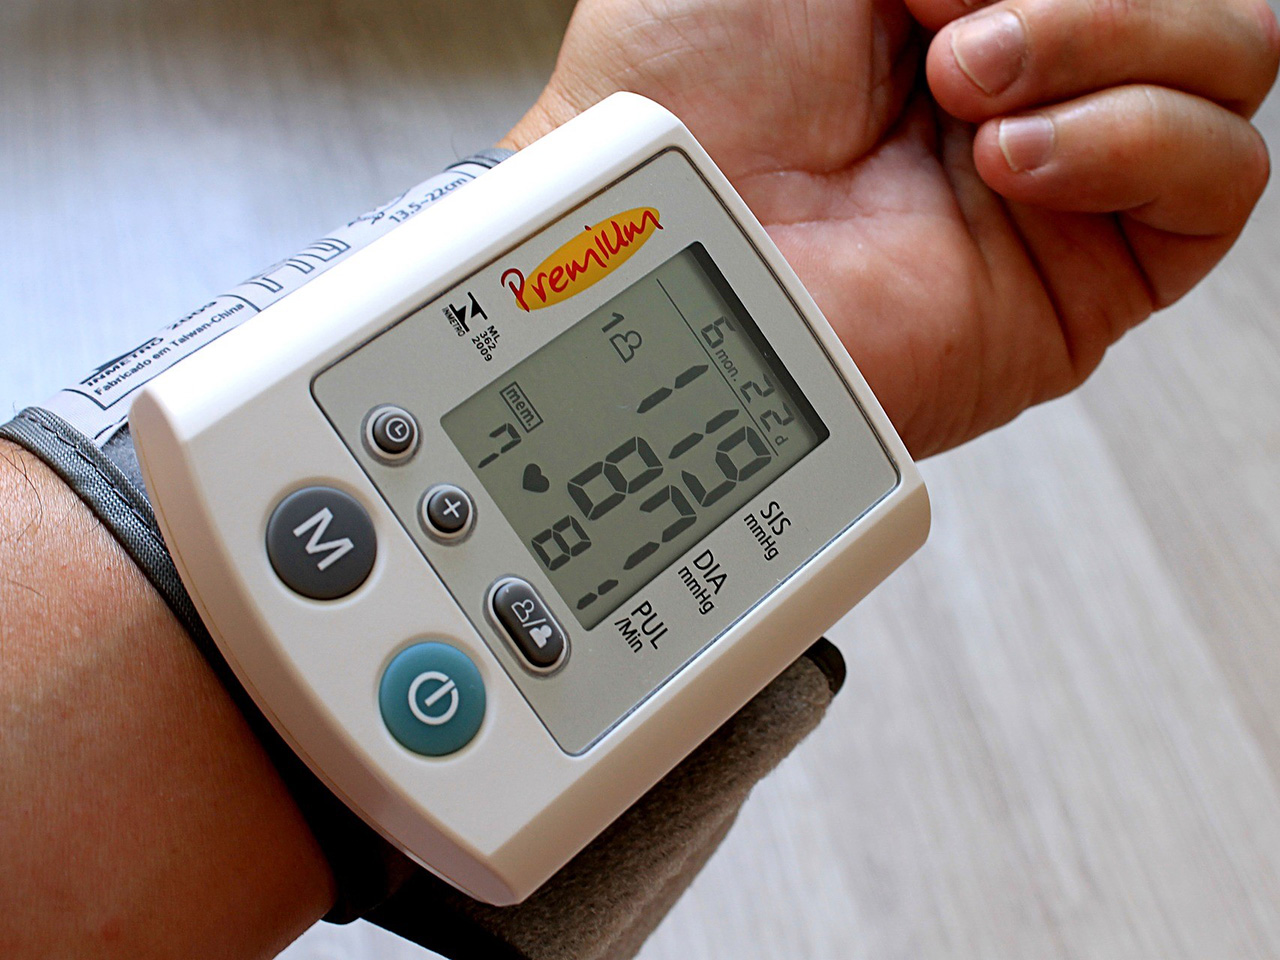 Koliko često mjeriti tlak kod kuće i kako ga pravilno izmjeriti?